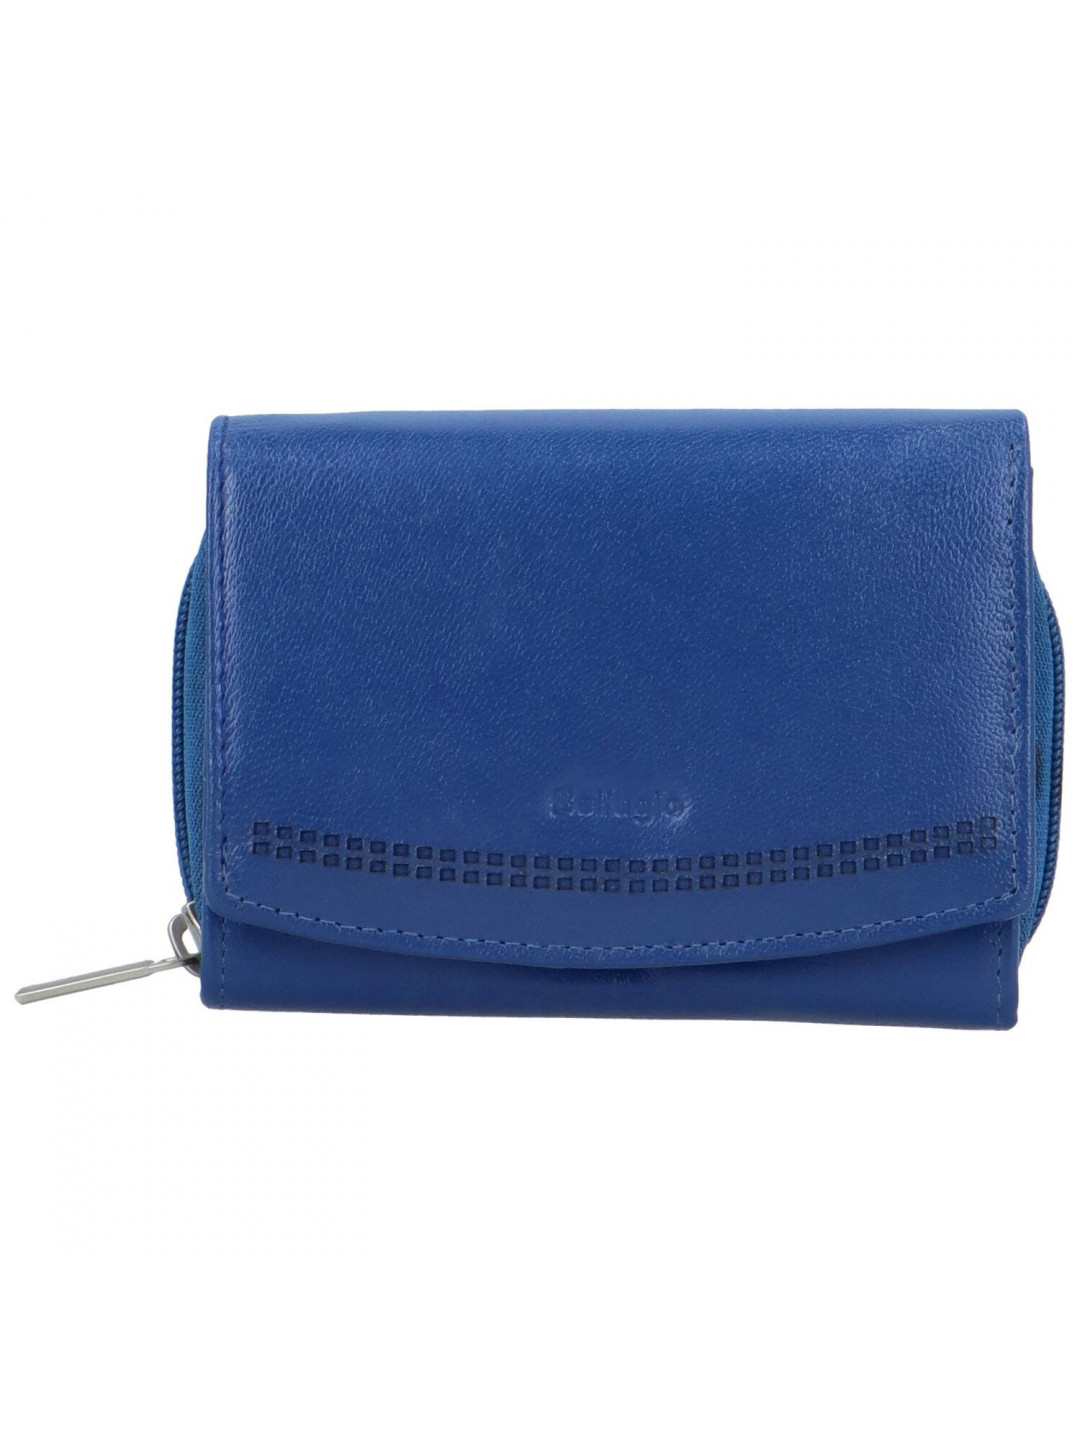 Dámská kožená peněženka tmavě modrá – Bellugio Odetta